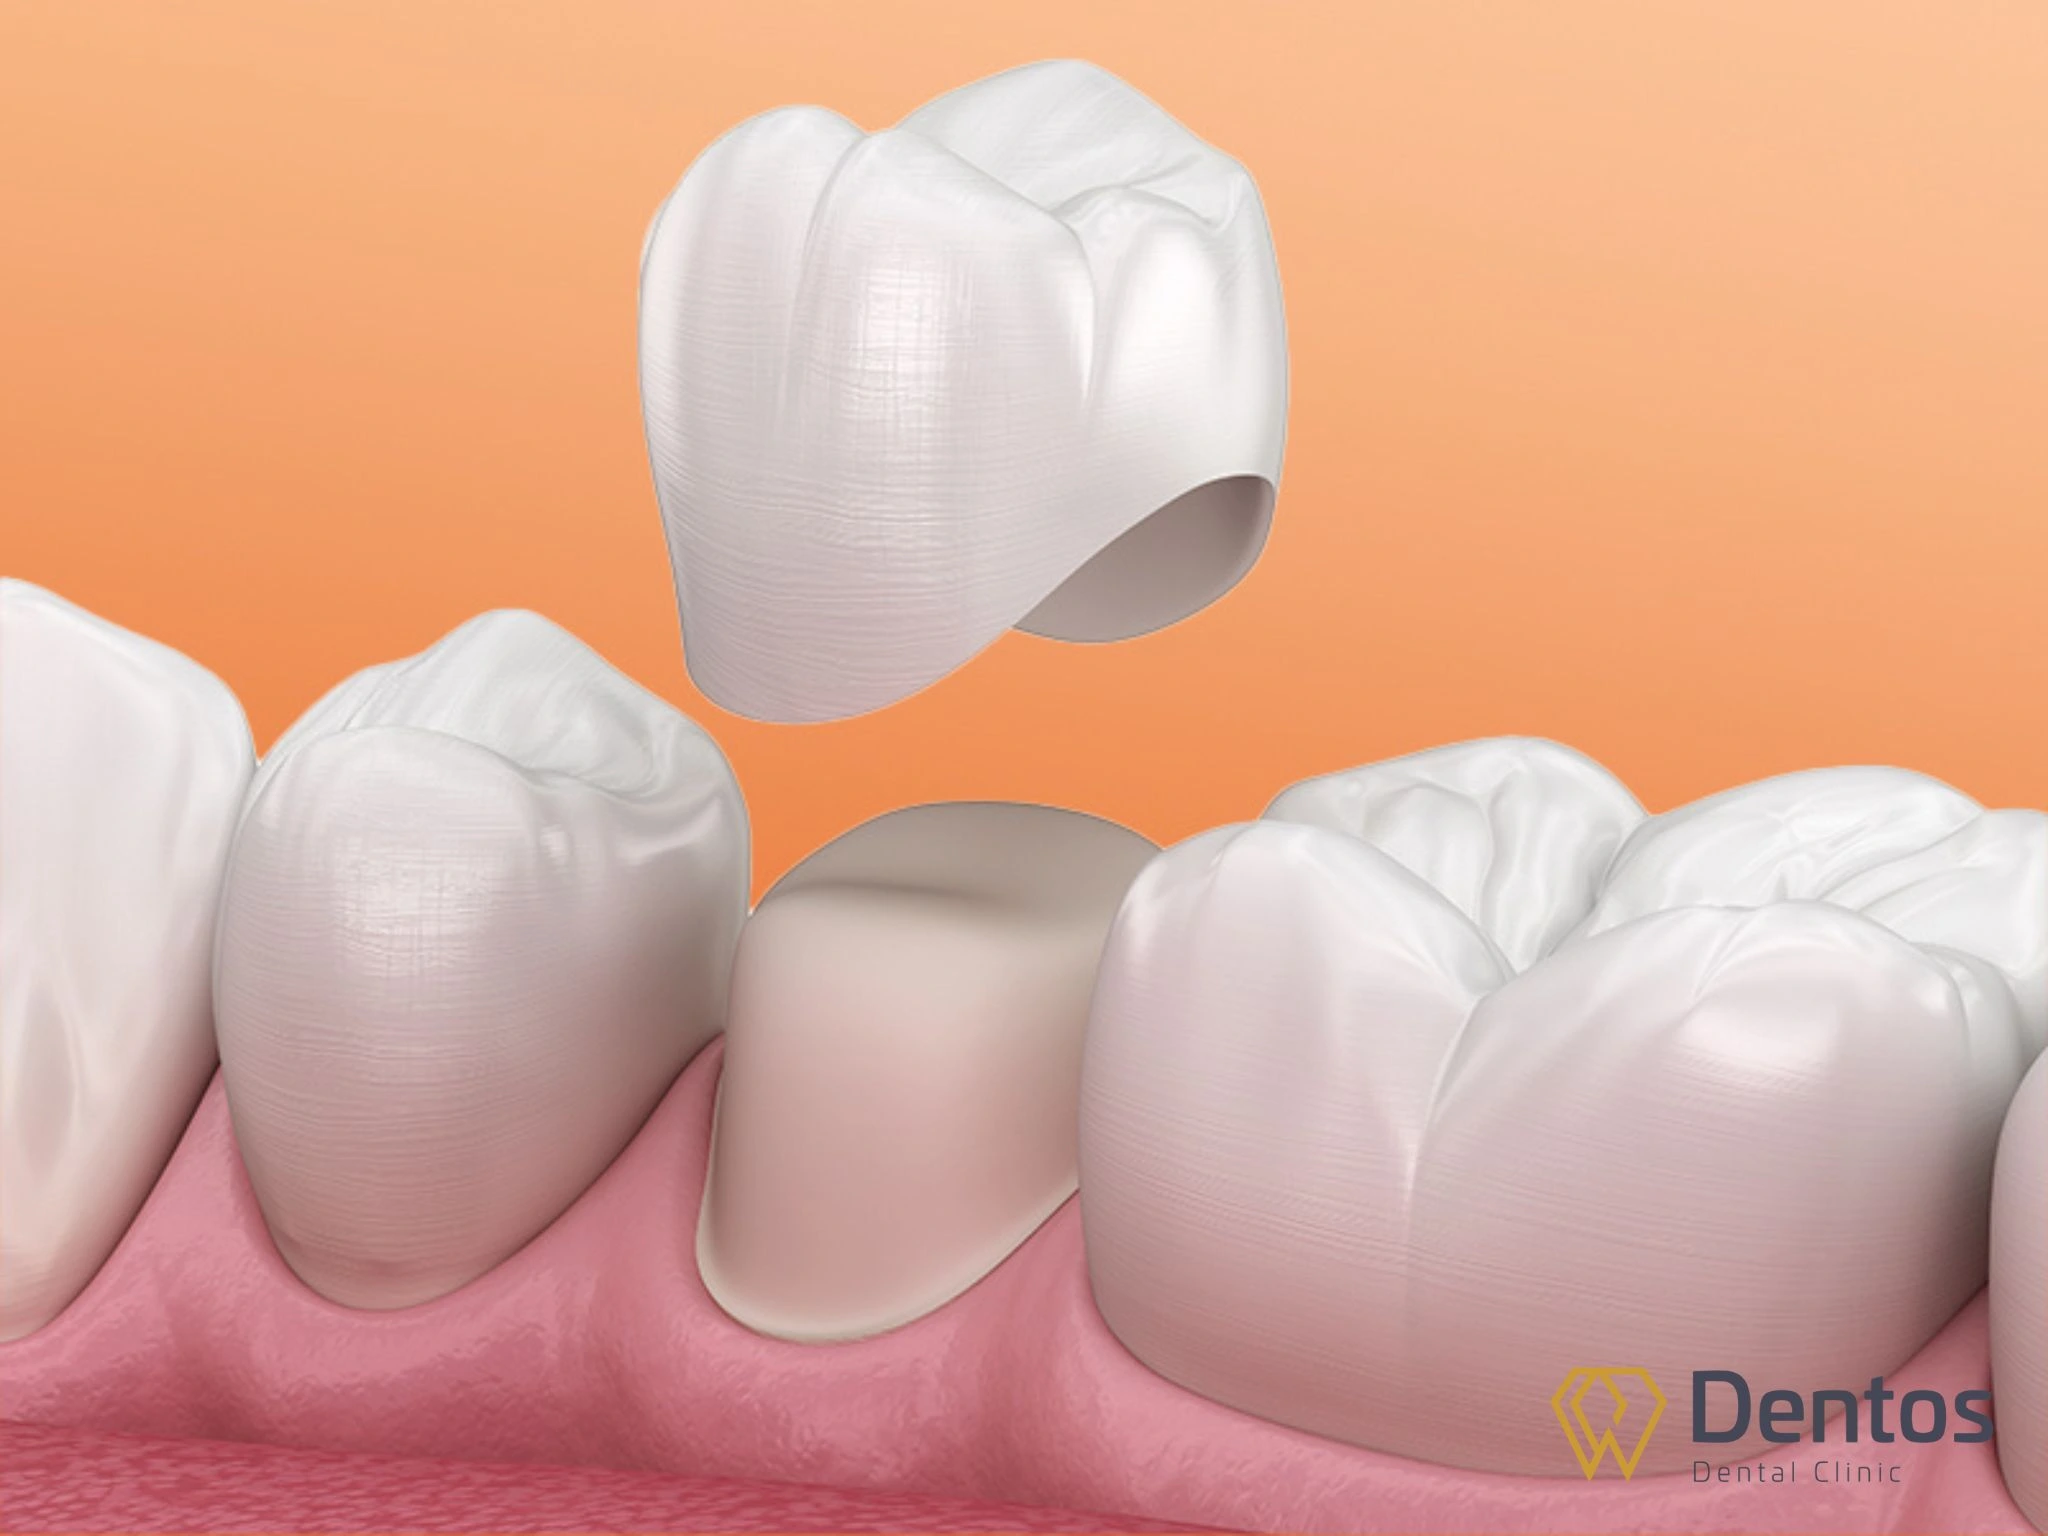 Răng toàn sứ là lựa chọn hoàn hảo cho khách hàng khi đáp ứng tốt về tính thẩm mỹ lẫn độ bền